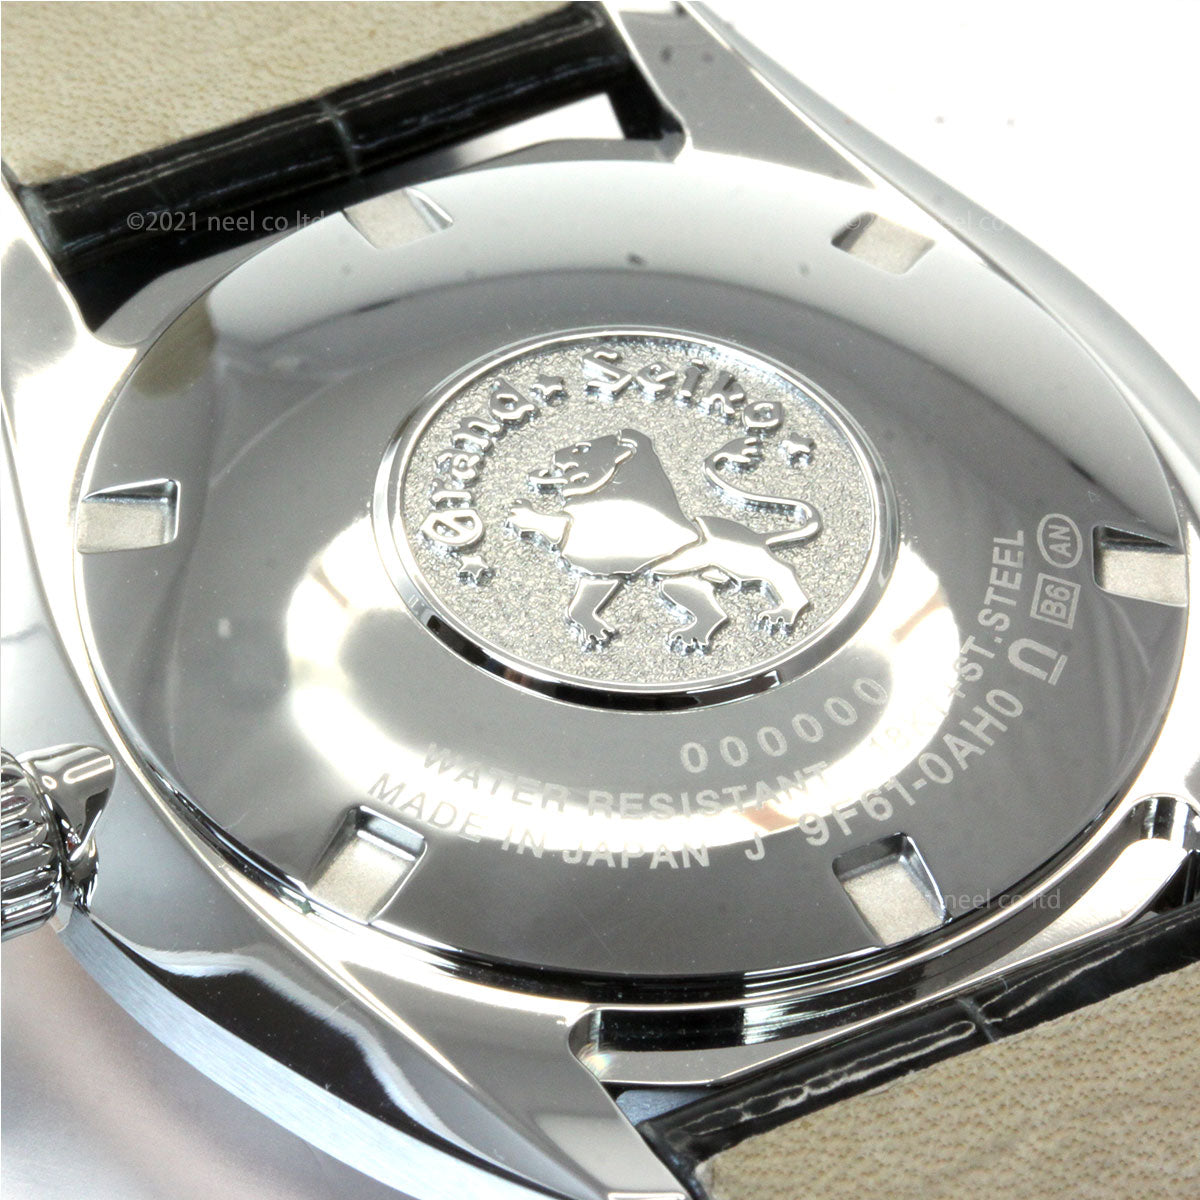 グランドセイコー GRAND SEIKO 腕時計 ペアモデル メンズ エレガンス Elegance Collection SBGX344【36回無金利ローン】